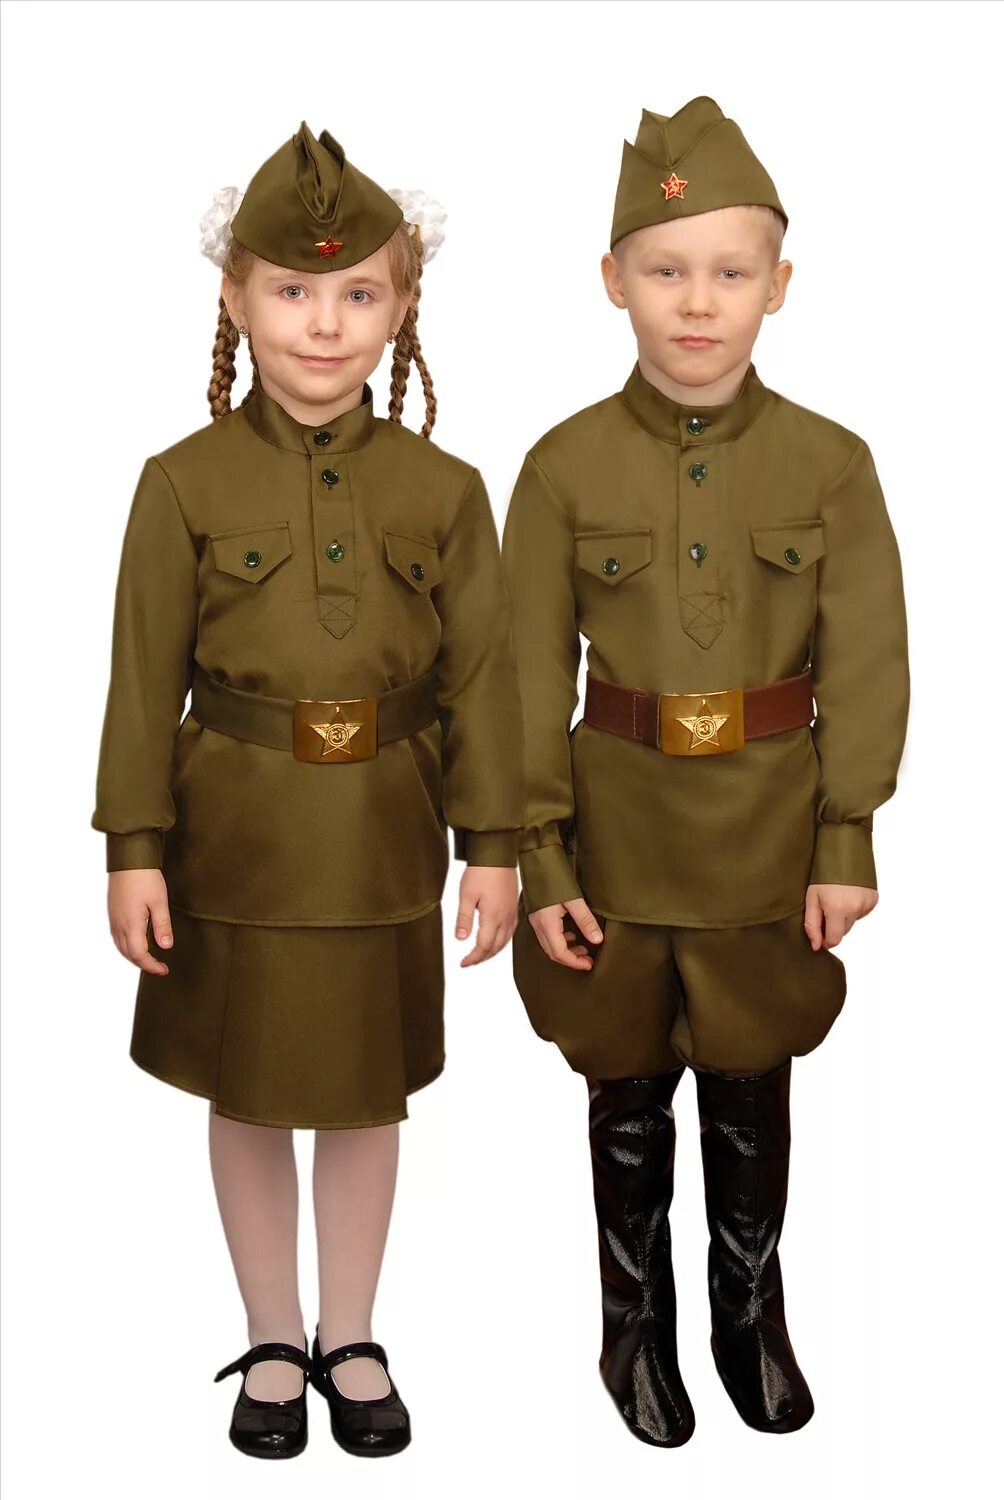 Аренда военной формы. Дети в военной форме. Военные костюмы для детей. Военная формалля детей. Солдатская форма для детей.